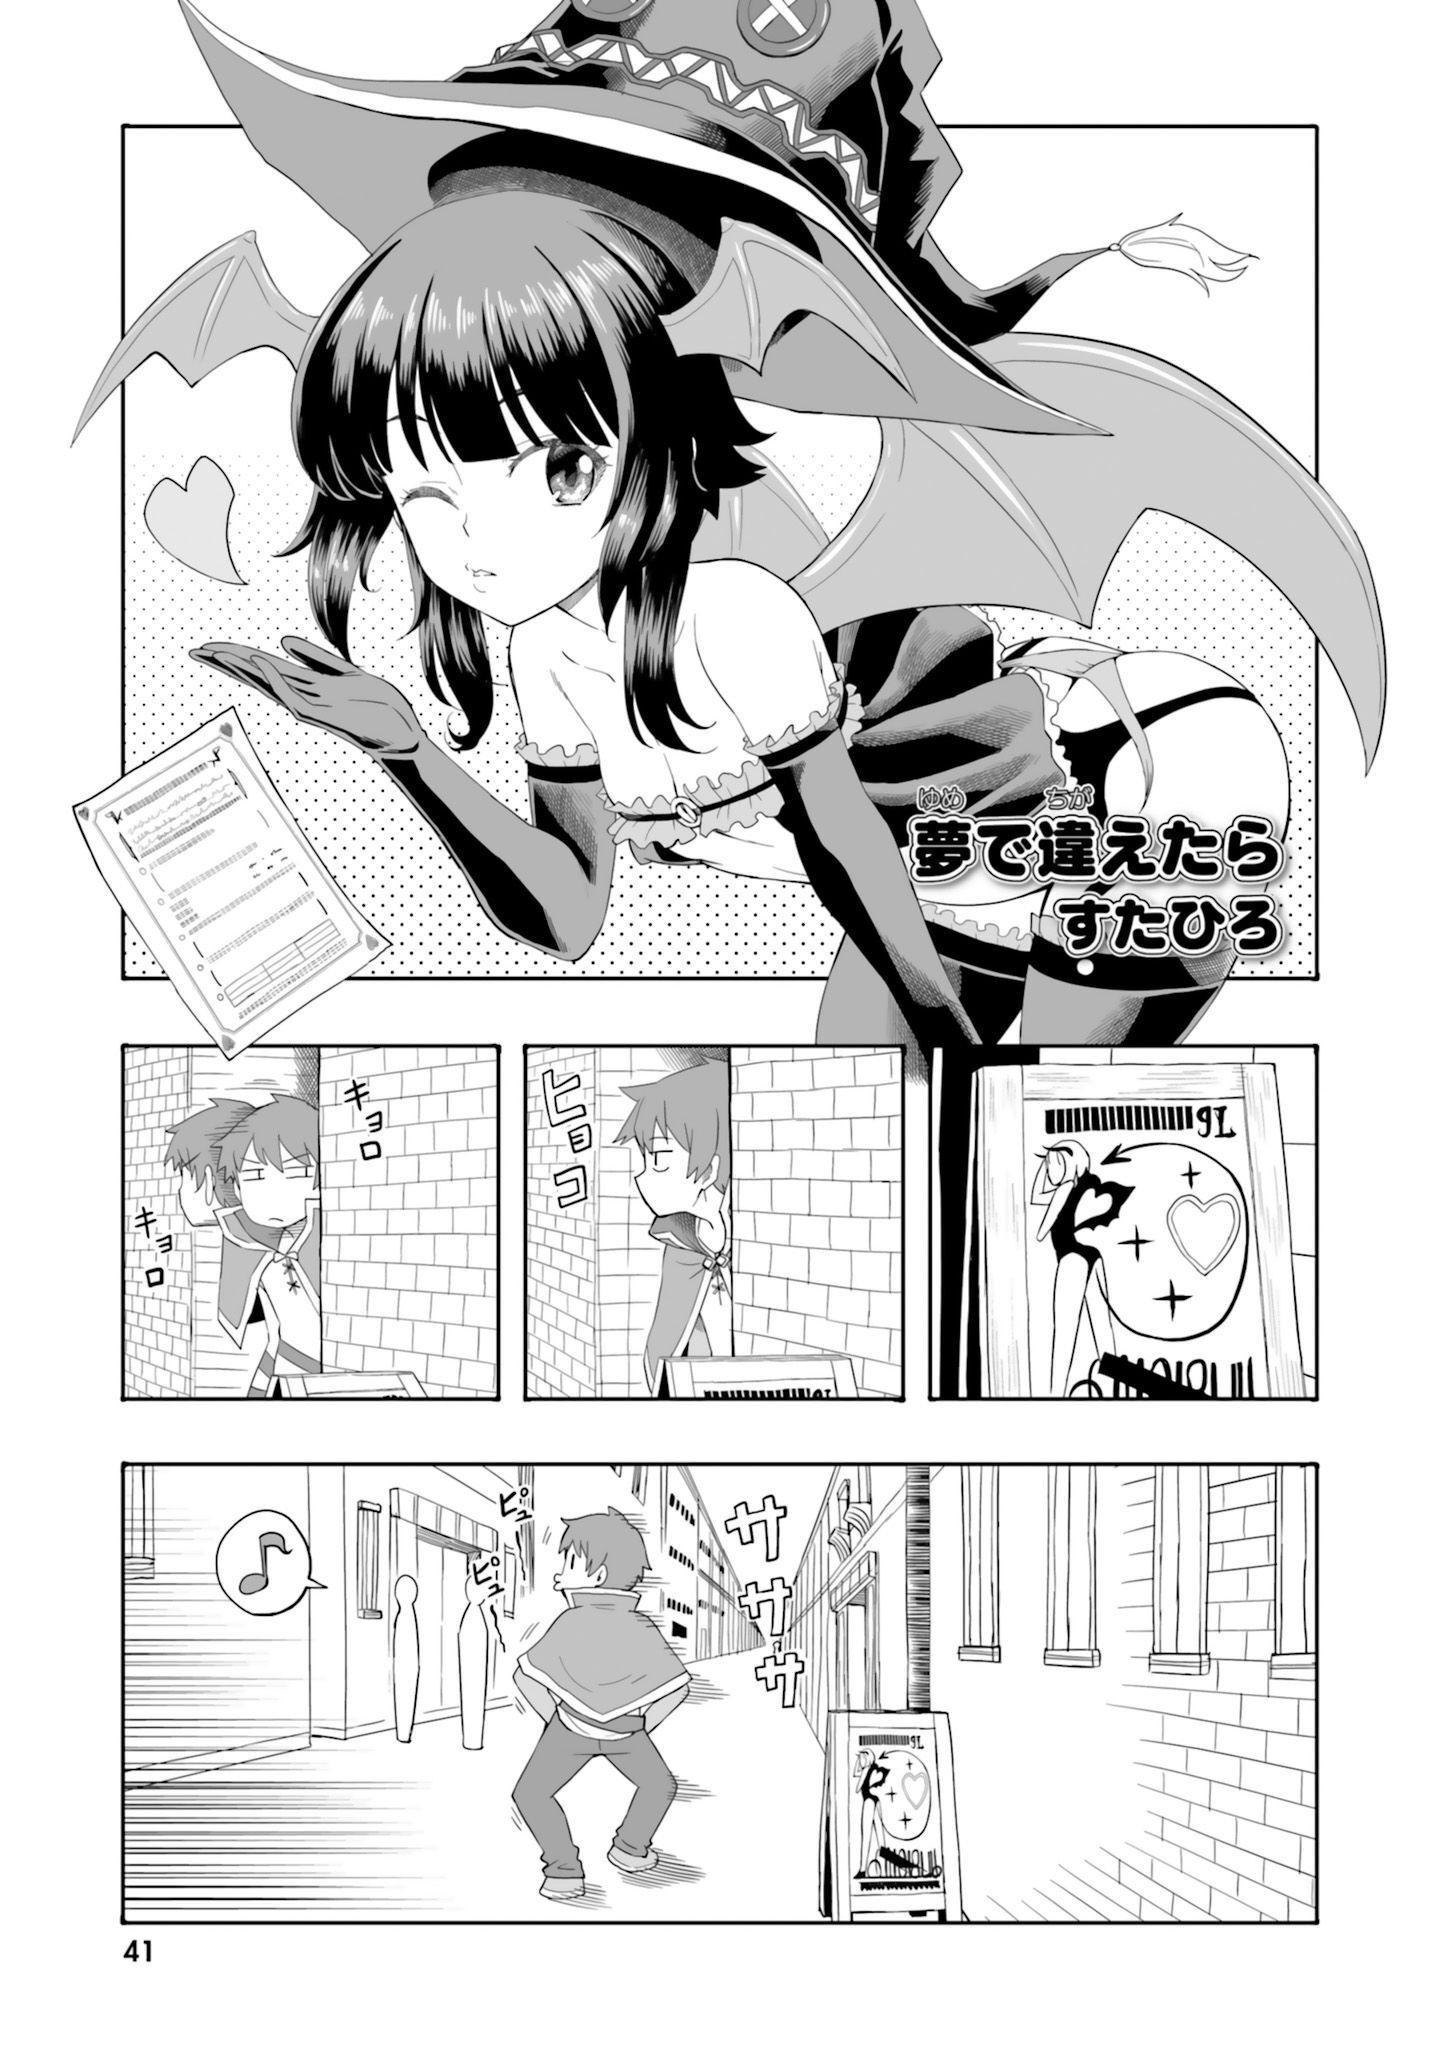 Megumin Anthology Chapter 6  Kono Subarashii Sekai ni Shukufuku